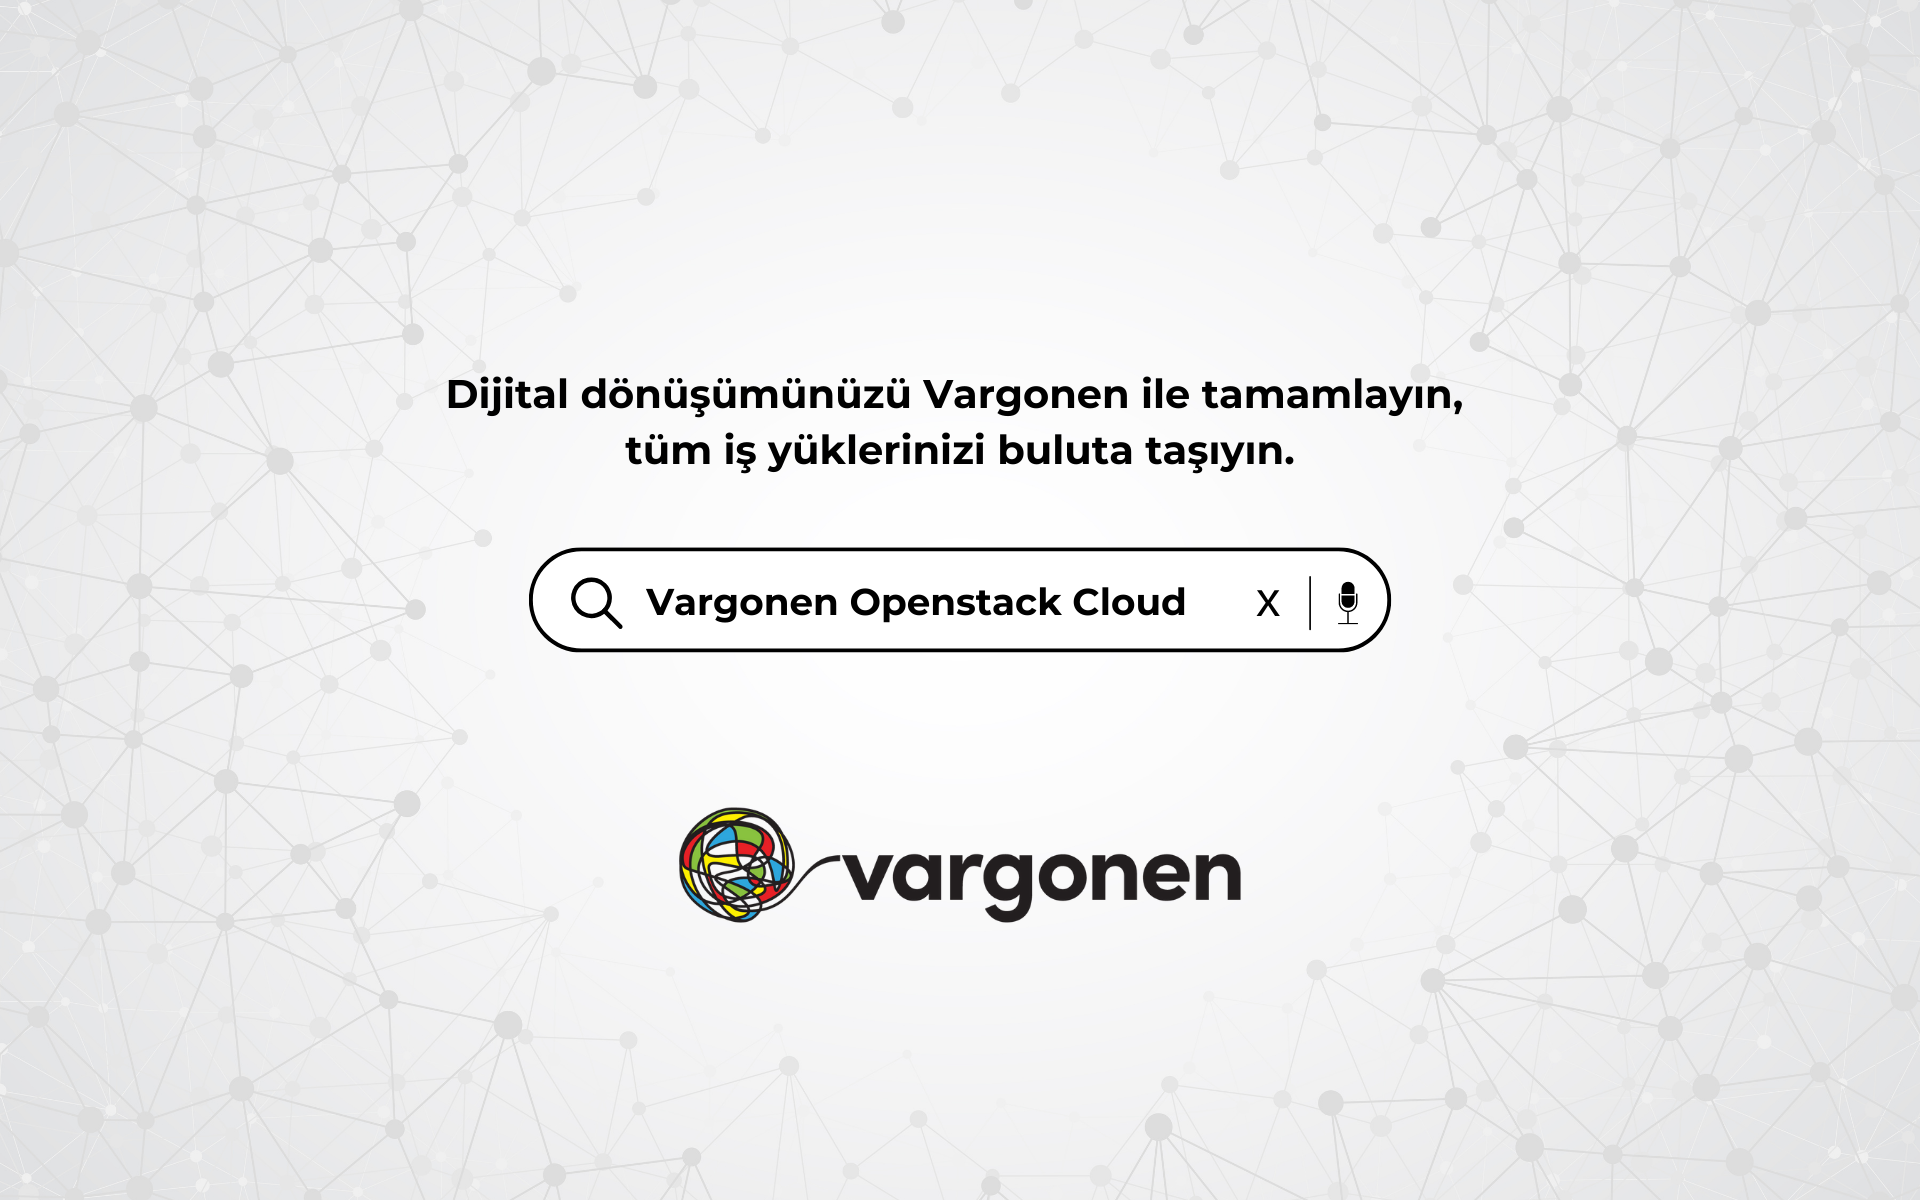 Vargonen OpenStack Cloud